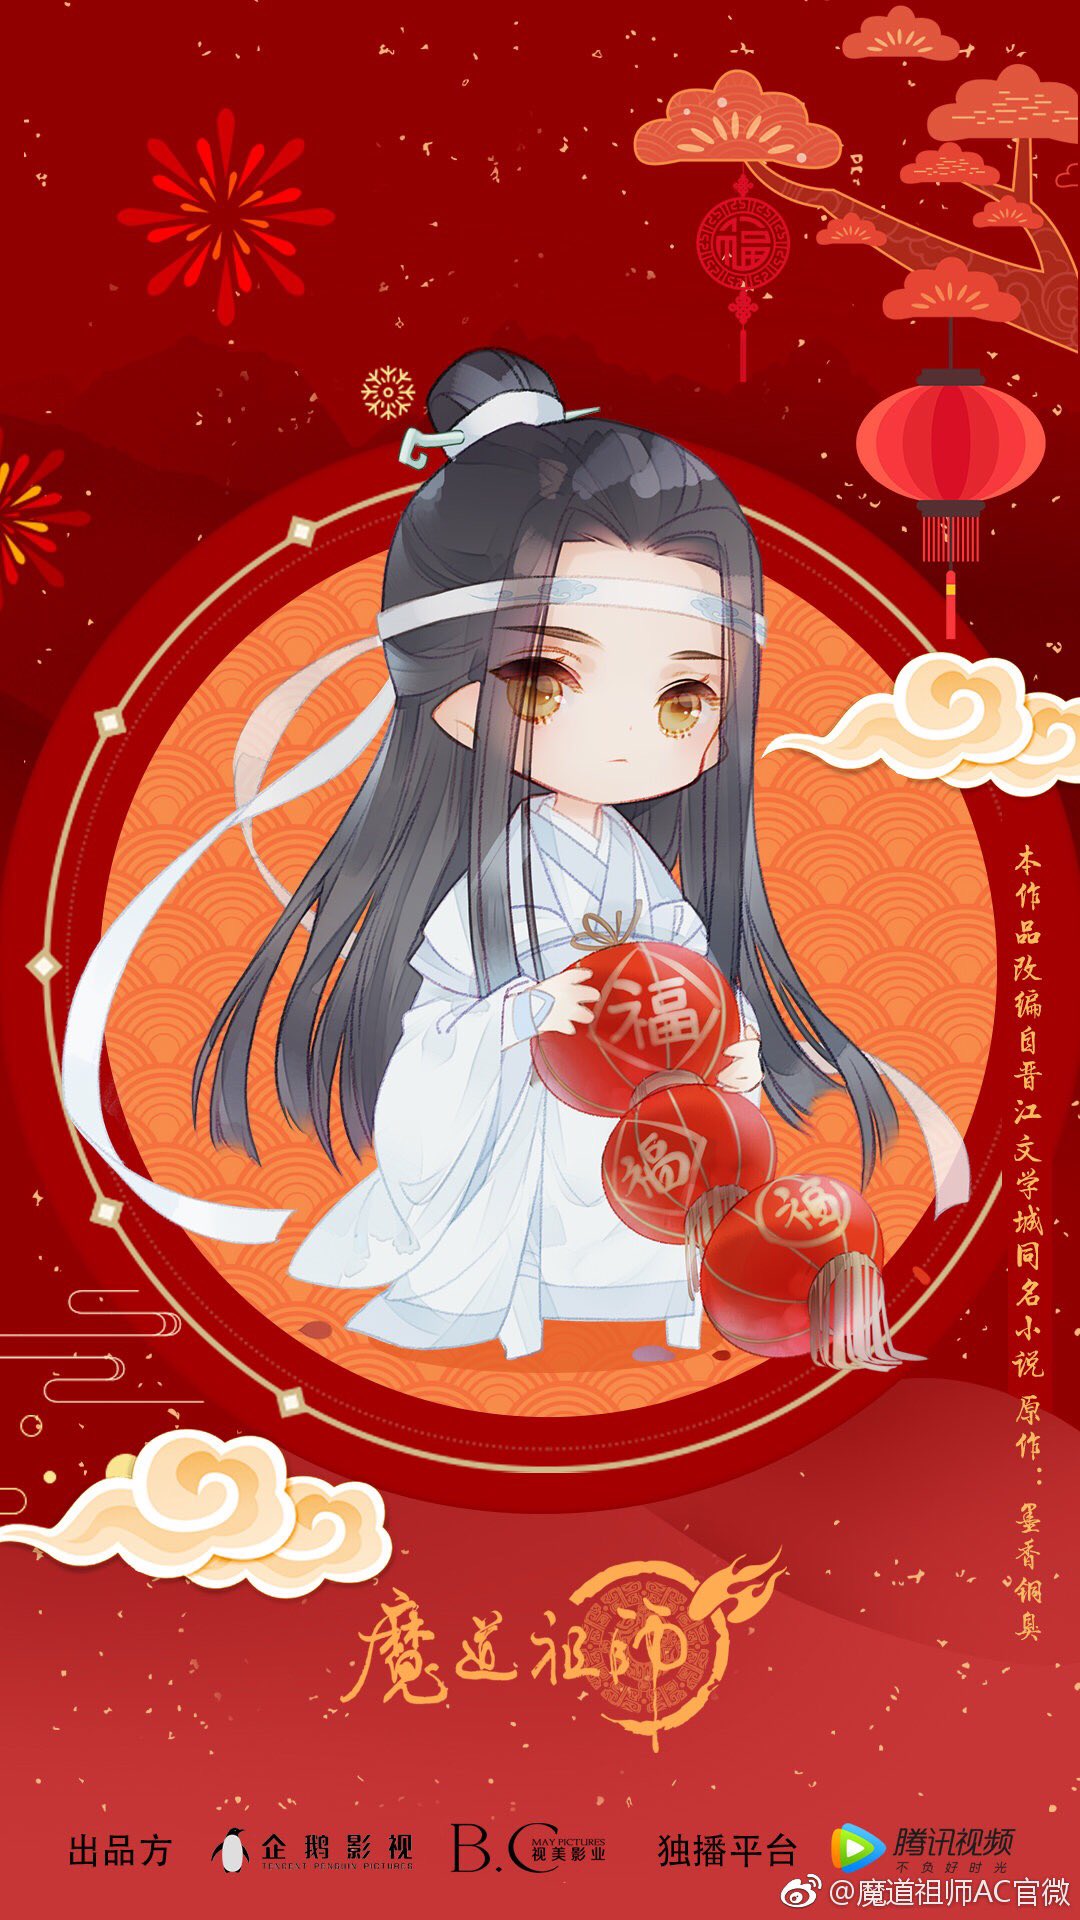 Download Mo Dao Zu Shi New Year Chibi Version Wallpaper